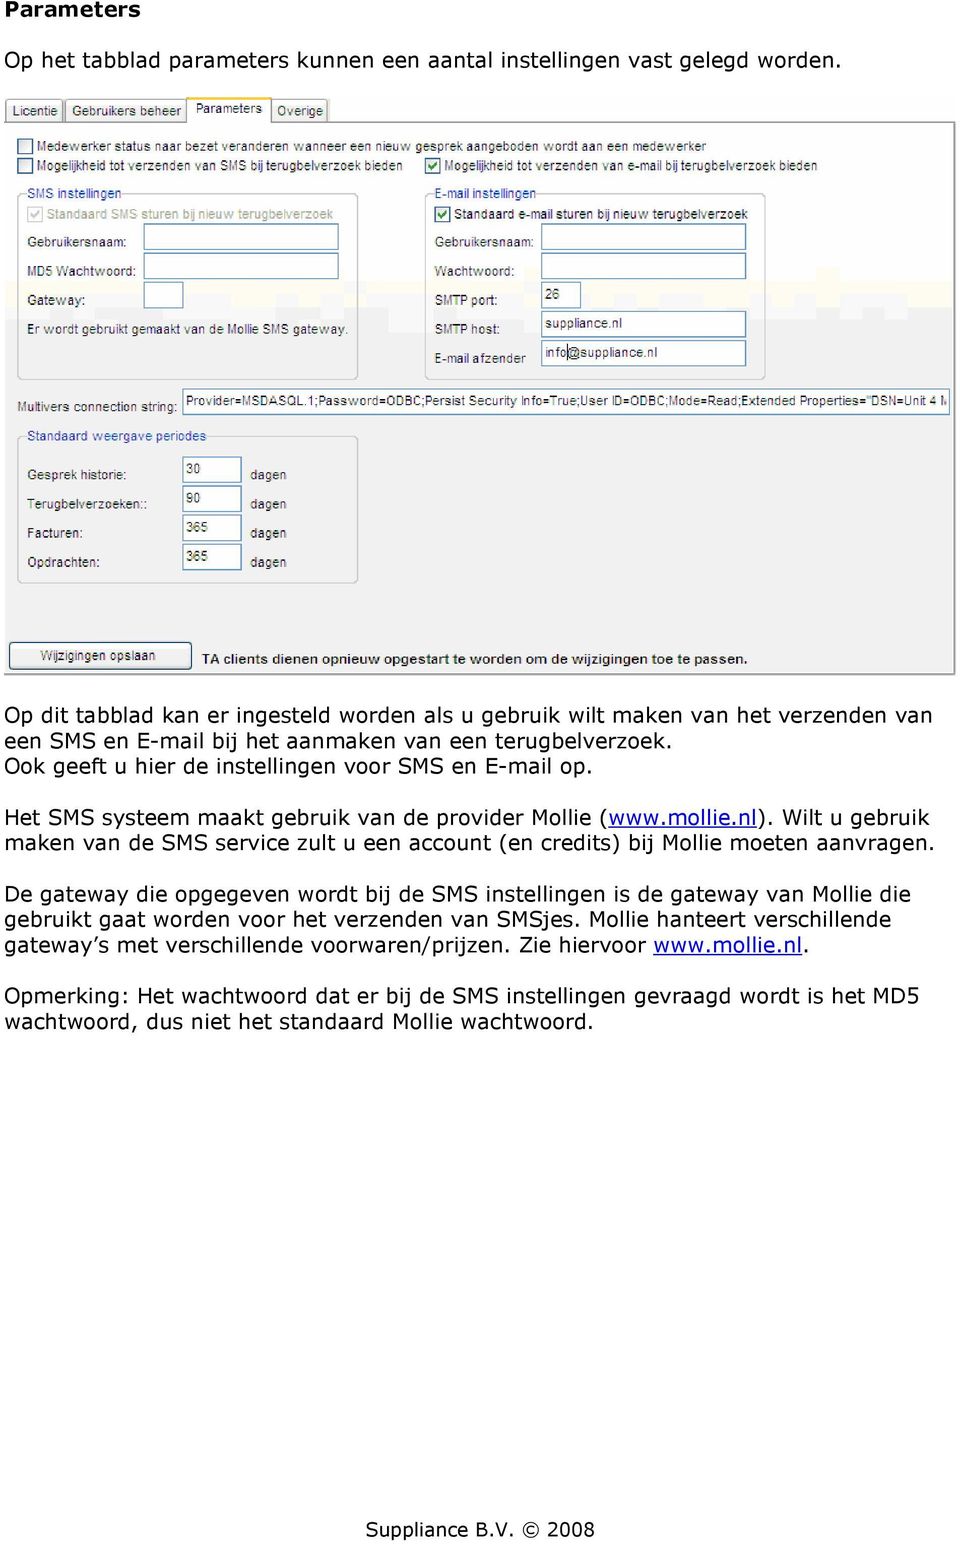 Ook geeft u hier de instellingen voor SMS en E-mail op. Het SMS systeem maakt gebruik van de provider Mollie (www.mollie.nl).